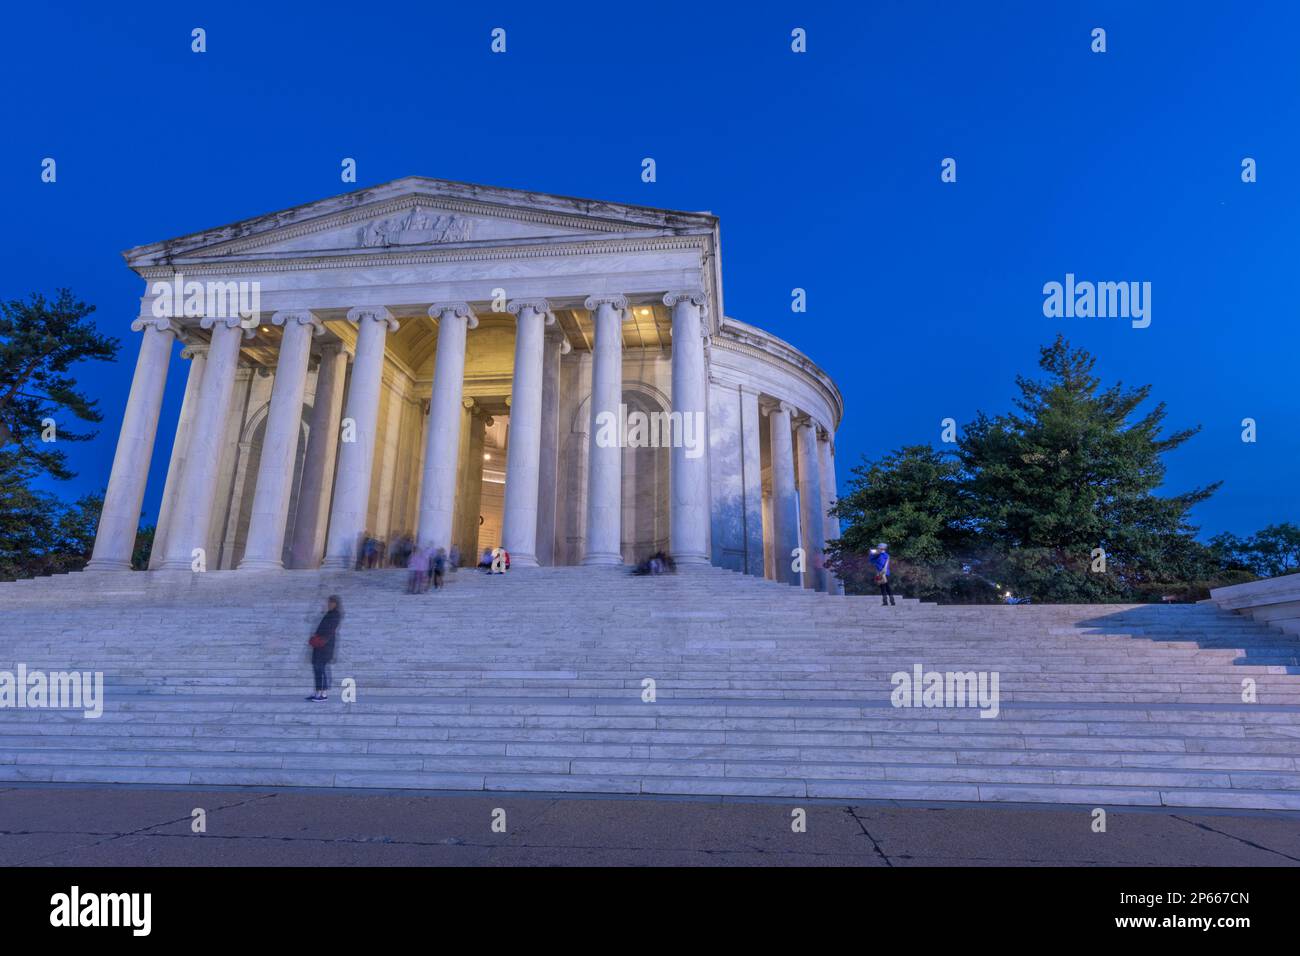 Le Thomas Jefferson Memorial, un monument national désigné dans le West Potomac Park, Washington, D.C., États-Unis d'Amérique, Amérique du Nord Banque D'Images